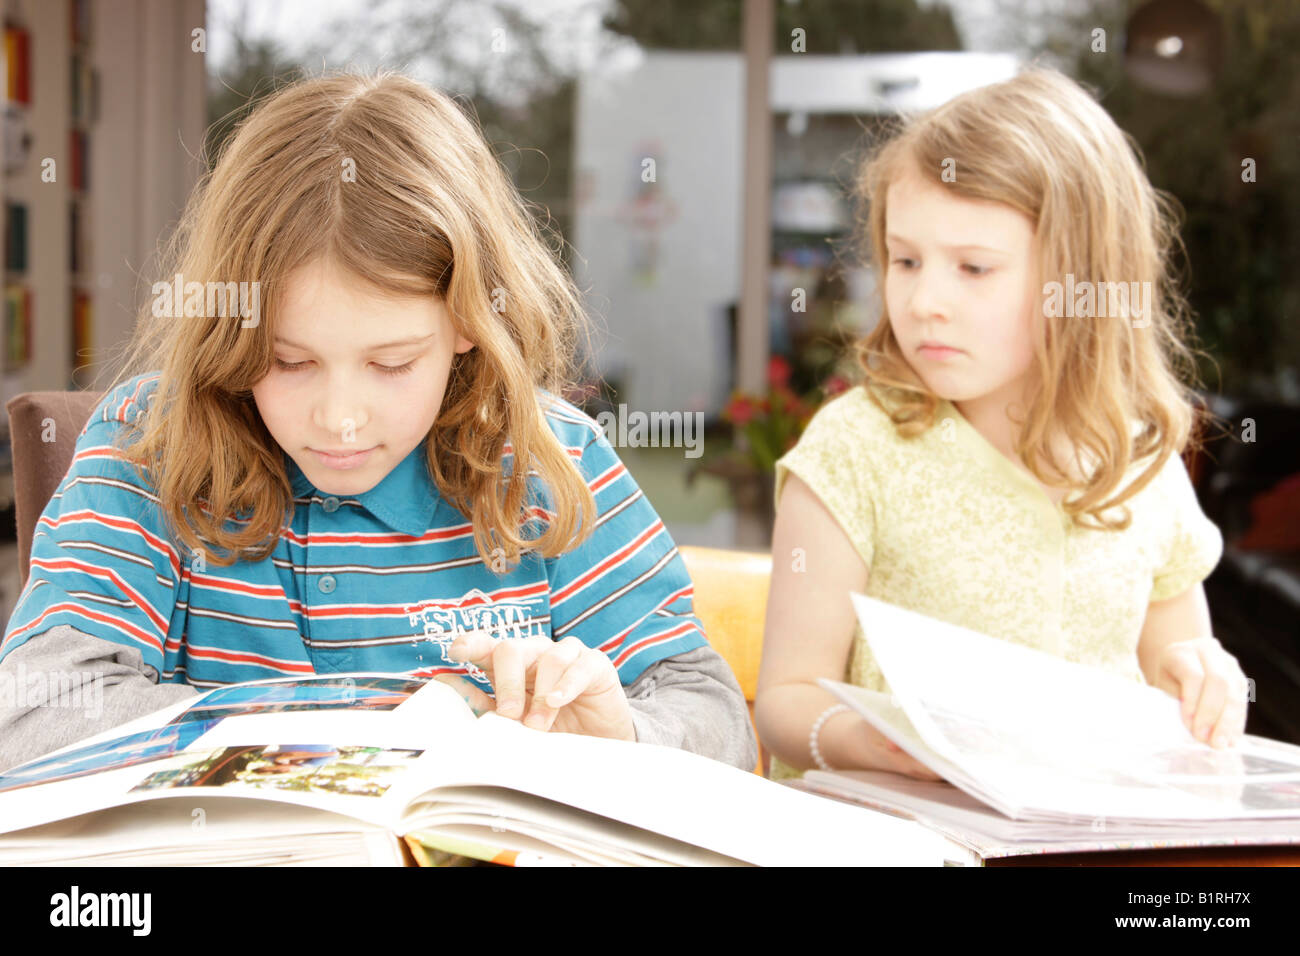 Mädchen, 8 Jahre alt, und junge, 10 Jahre alt, betrachtet man Fotoalben Stockfoto